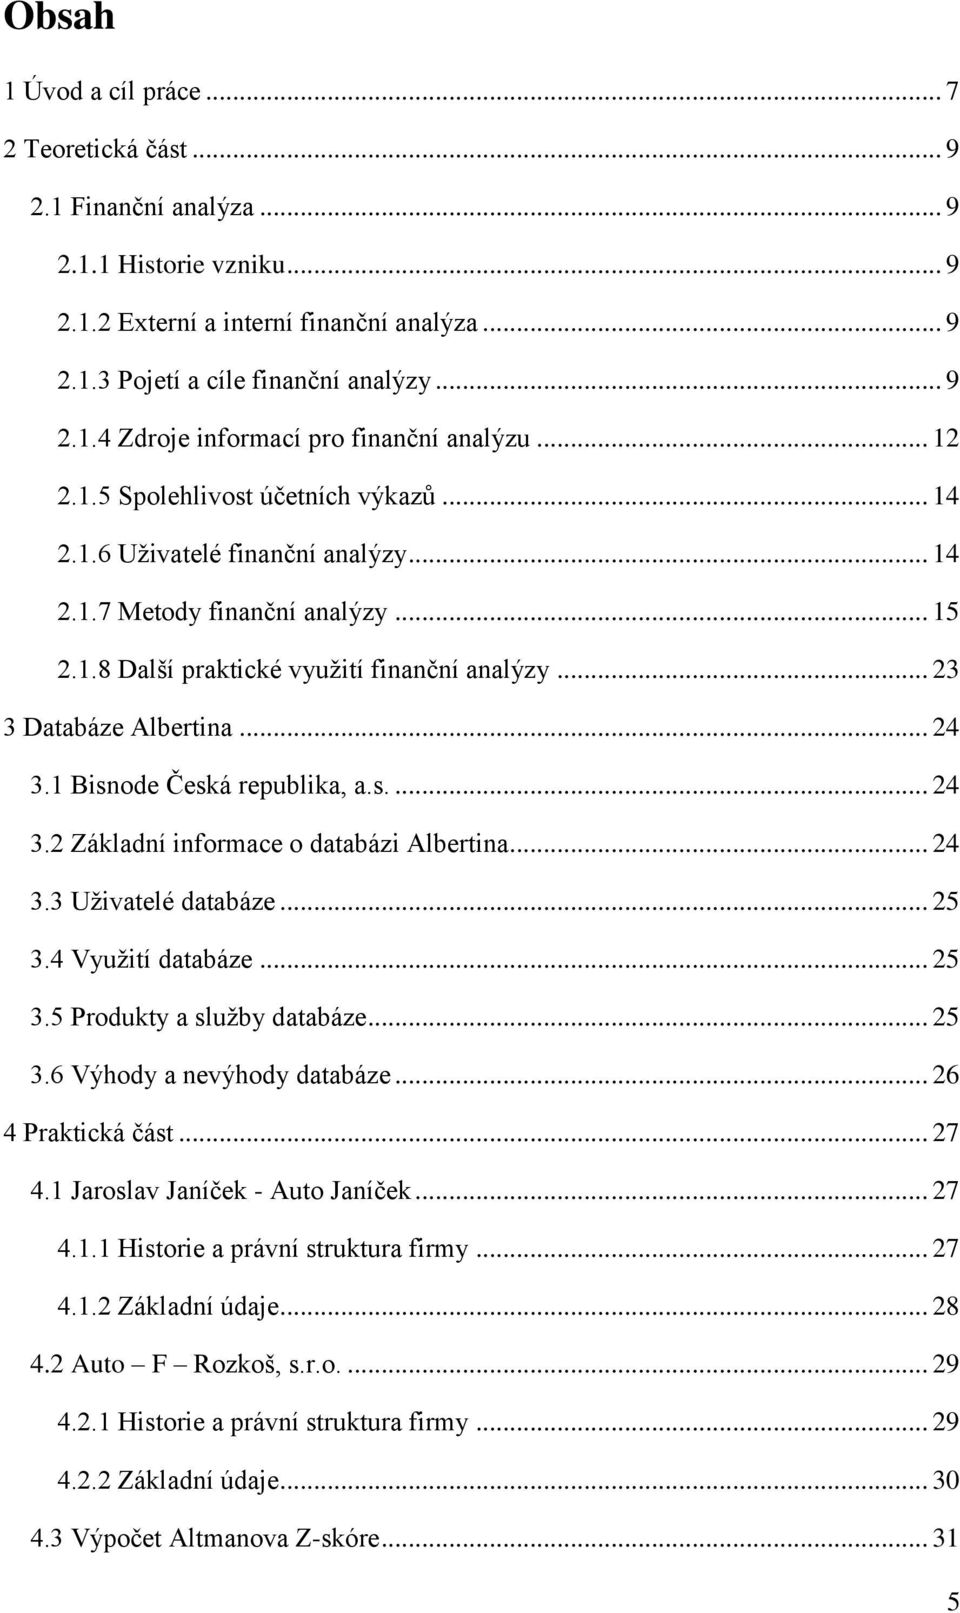 .. 24 3.1 Bisnode Česká republika, a.s.... 24 3.2 Základní informace o databázi Albertina... 24 3.3 Uživatelé databáze... 25 3.4 Využití databáze... 25 3.5 Produkty a služby databáze... 25 3.6 Výhody a nevýhody databáze.